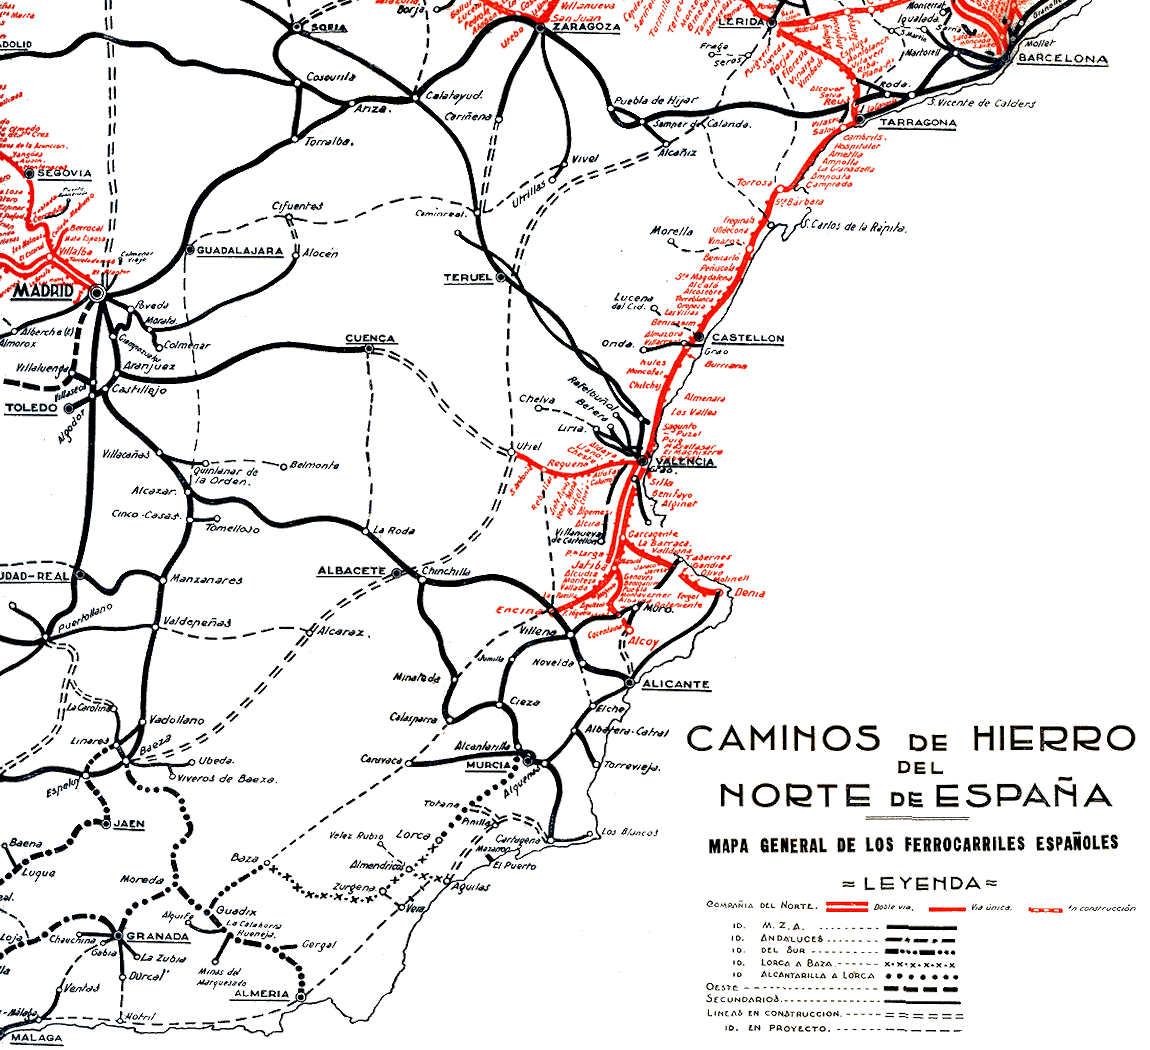 CAMINOS DE HIERRO DEL NORTE • MAPA GENERAL DE LOS FERROCARRILES ESPAÑOLES (1931)